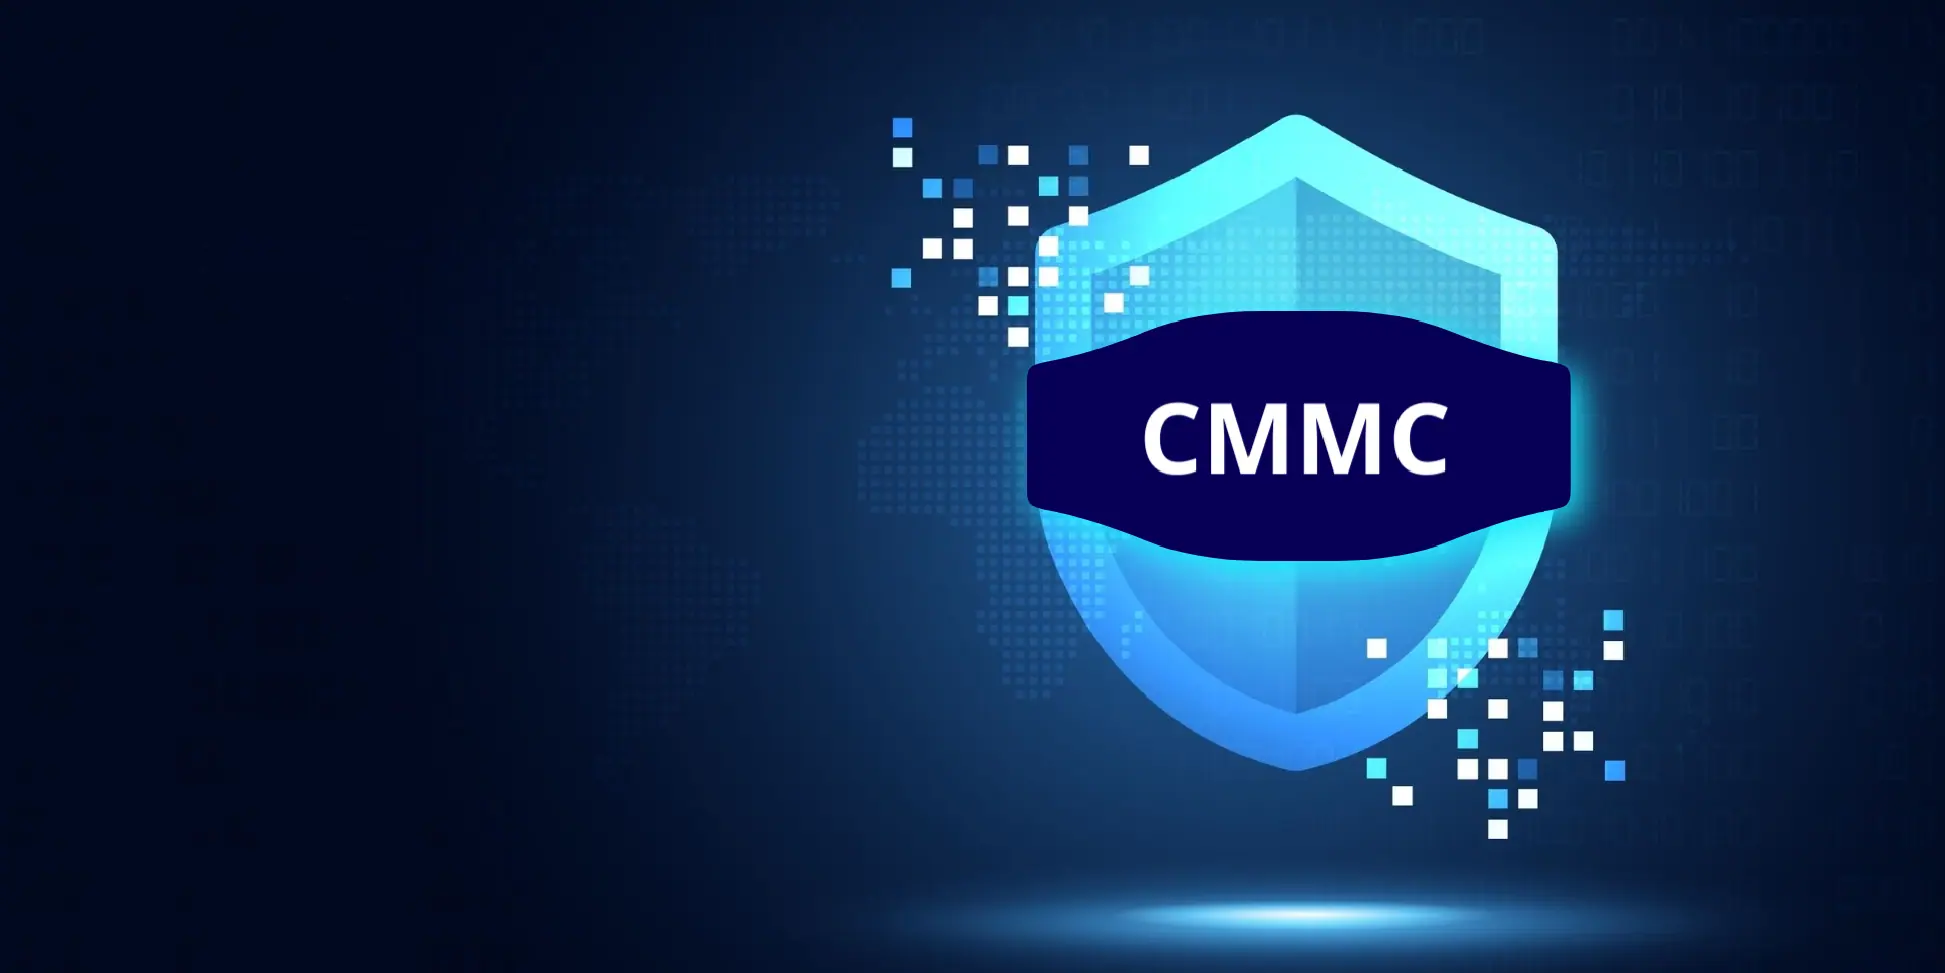 What is CMMC?